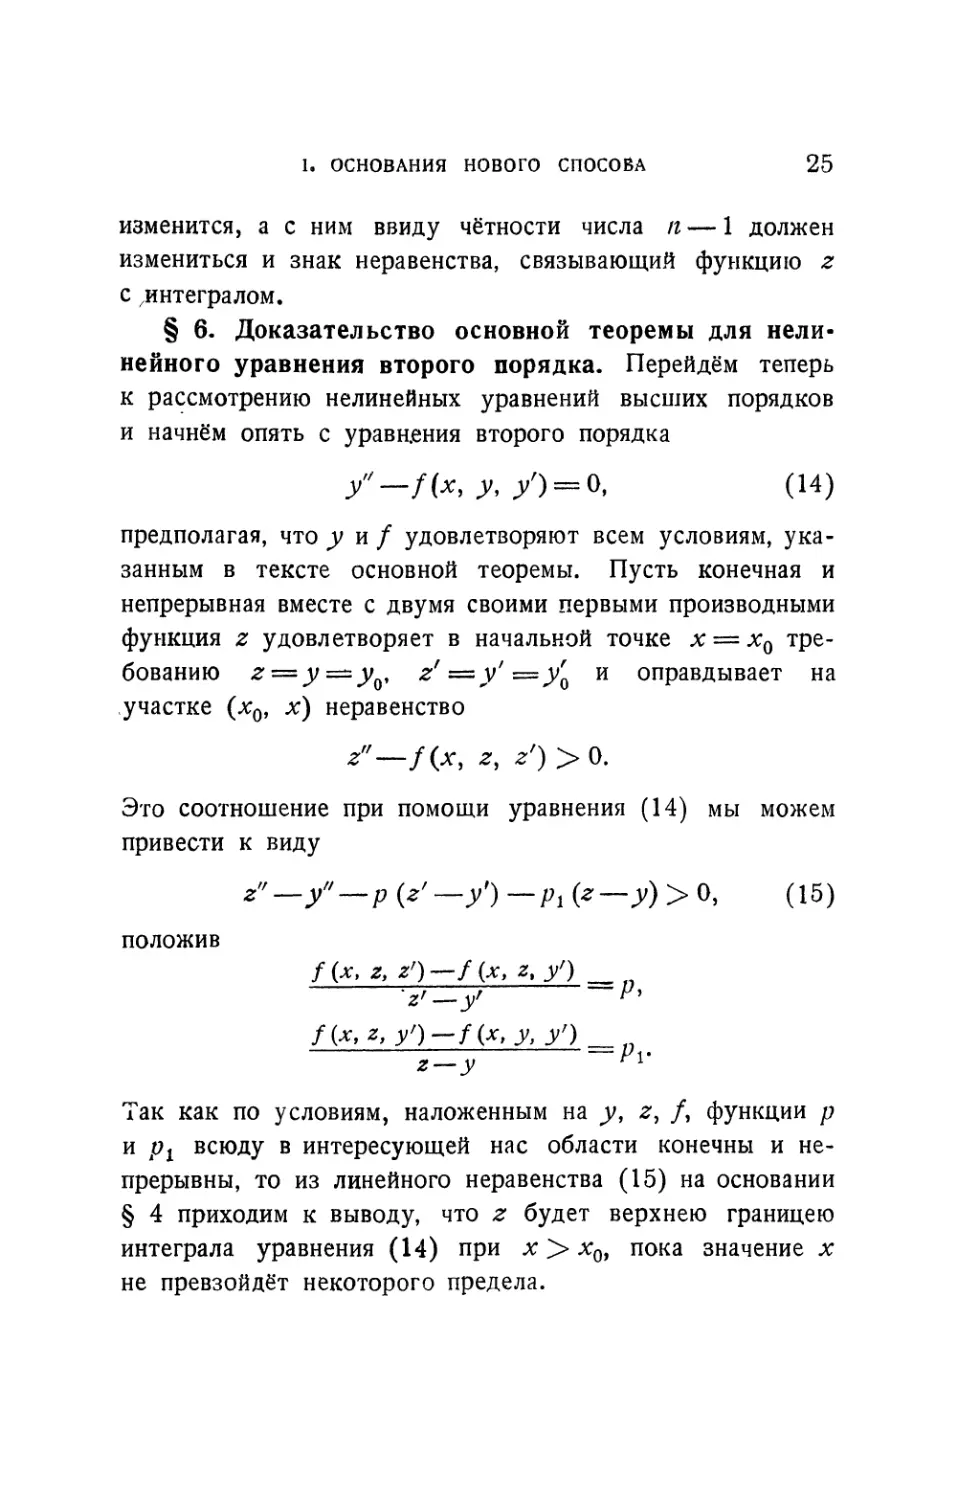 § 6. Доказательство основной теоремы для нелинейного уравнения второго порядка